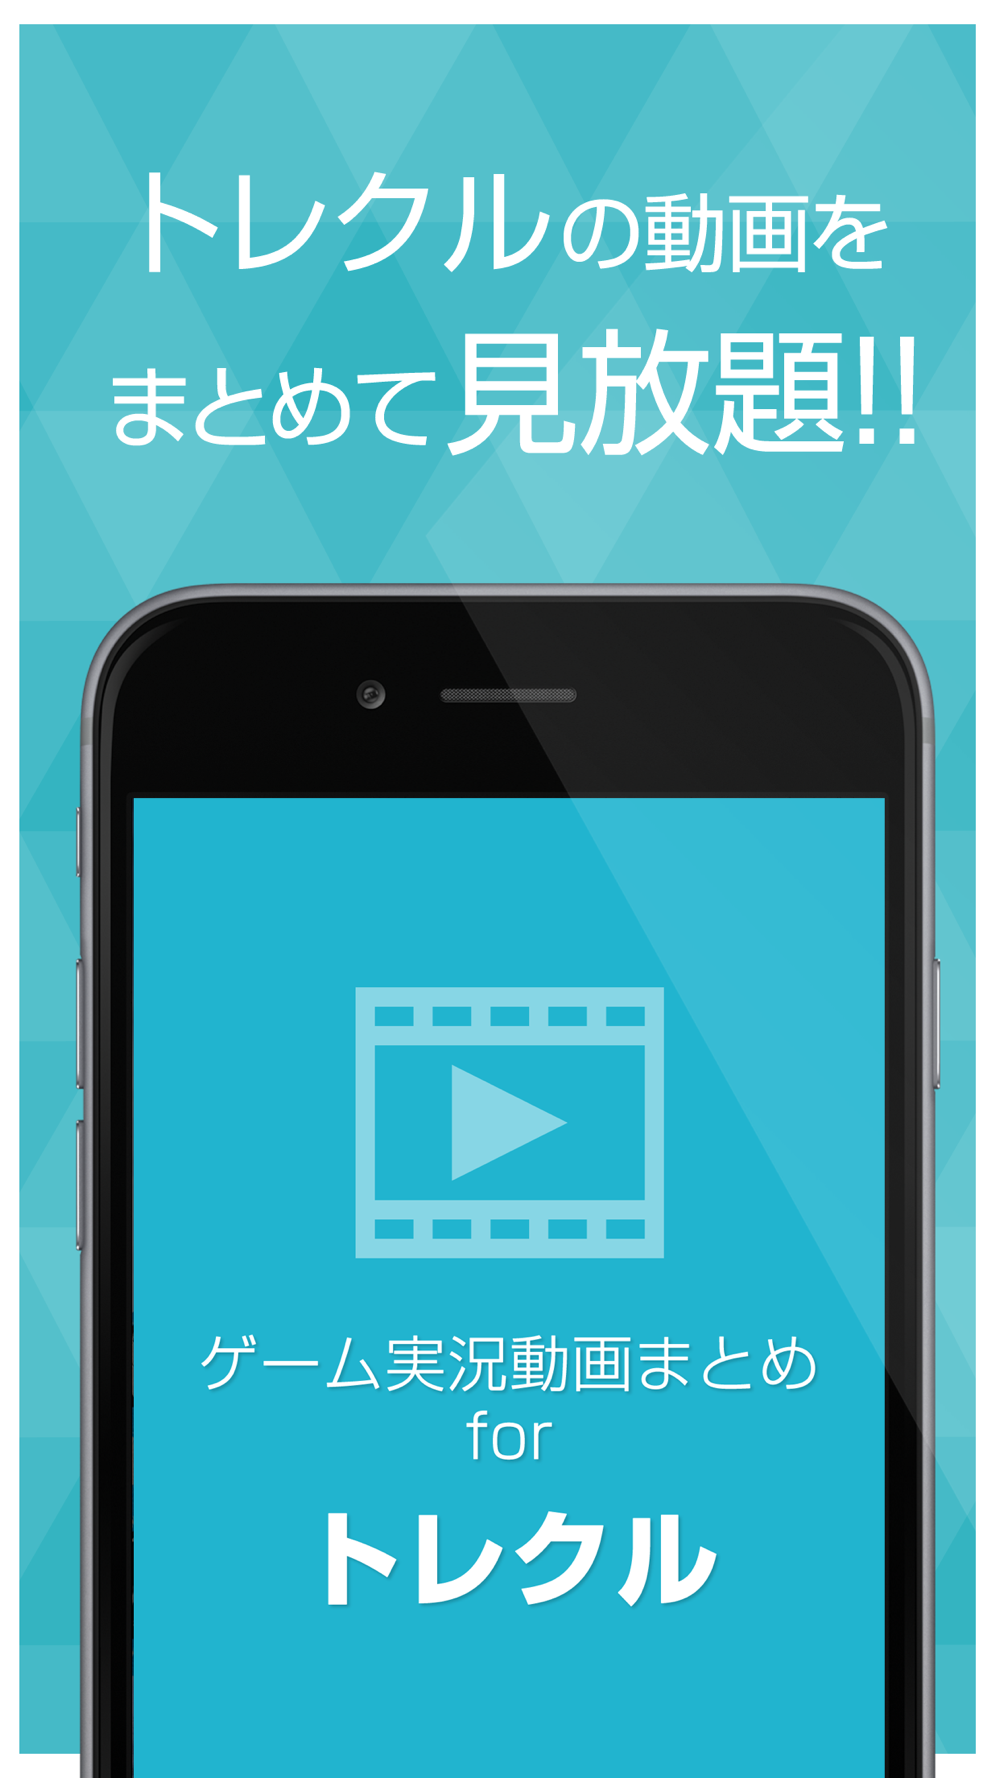 ゲーム実況動画まとめ For ワンピーストレジャークルーズ トレクル Free Download App For Iphone Steprimo Com